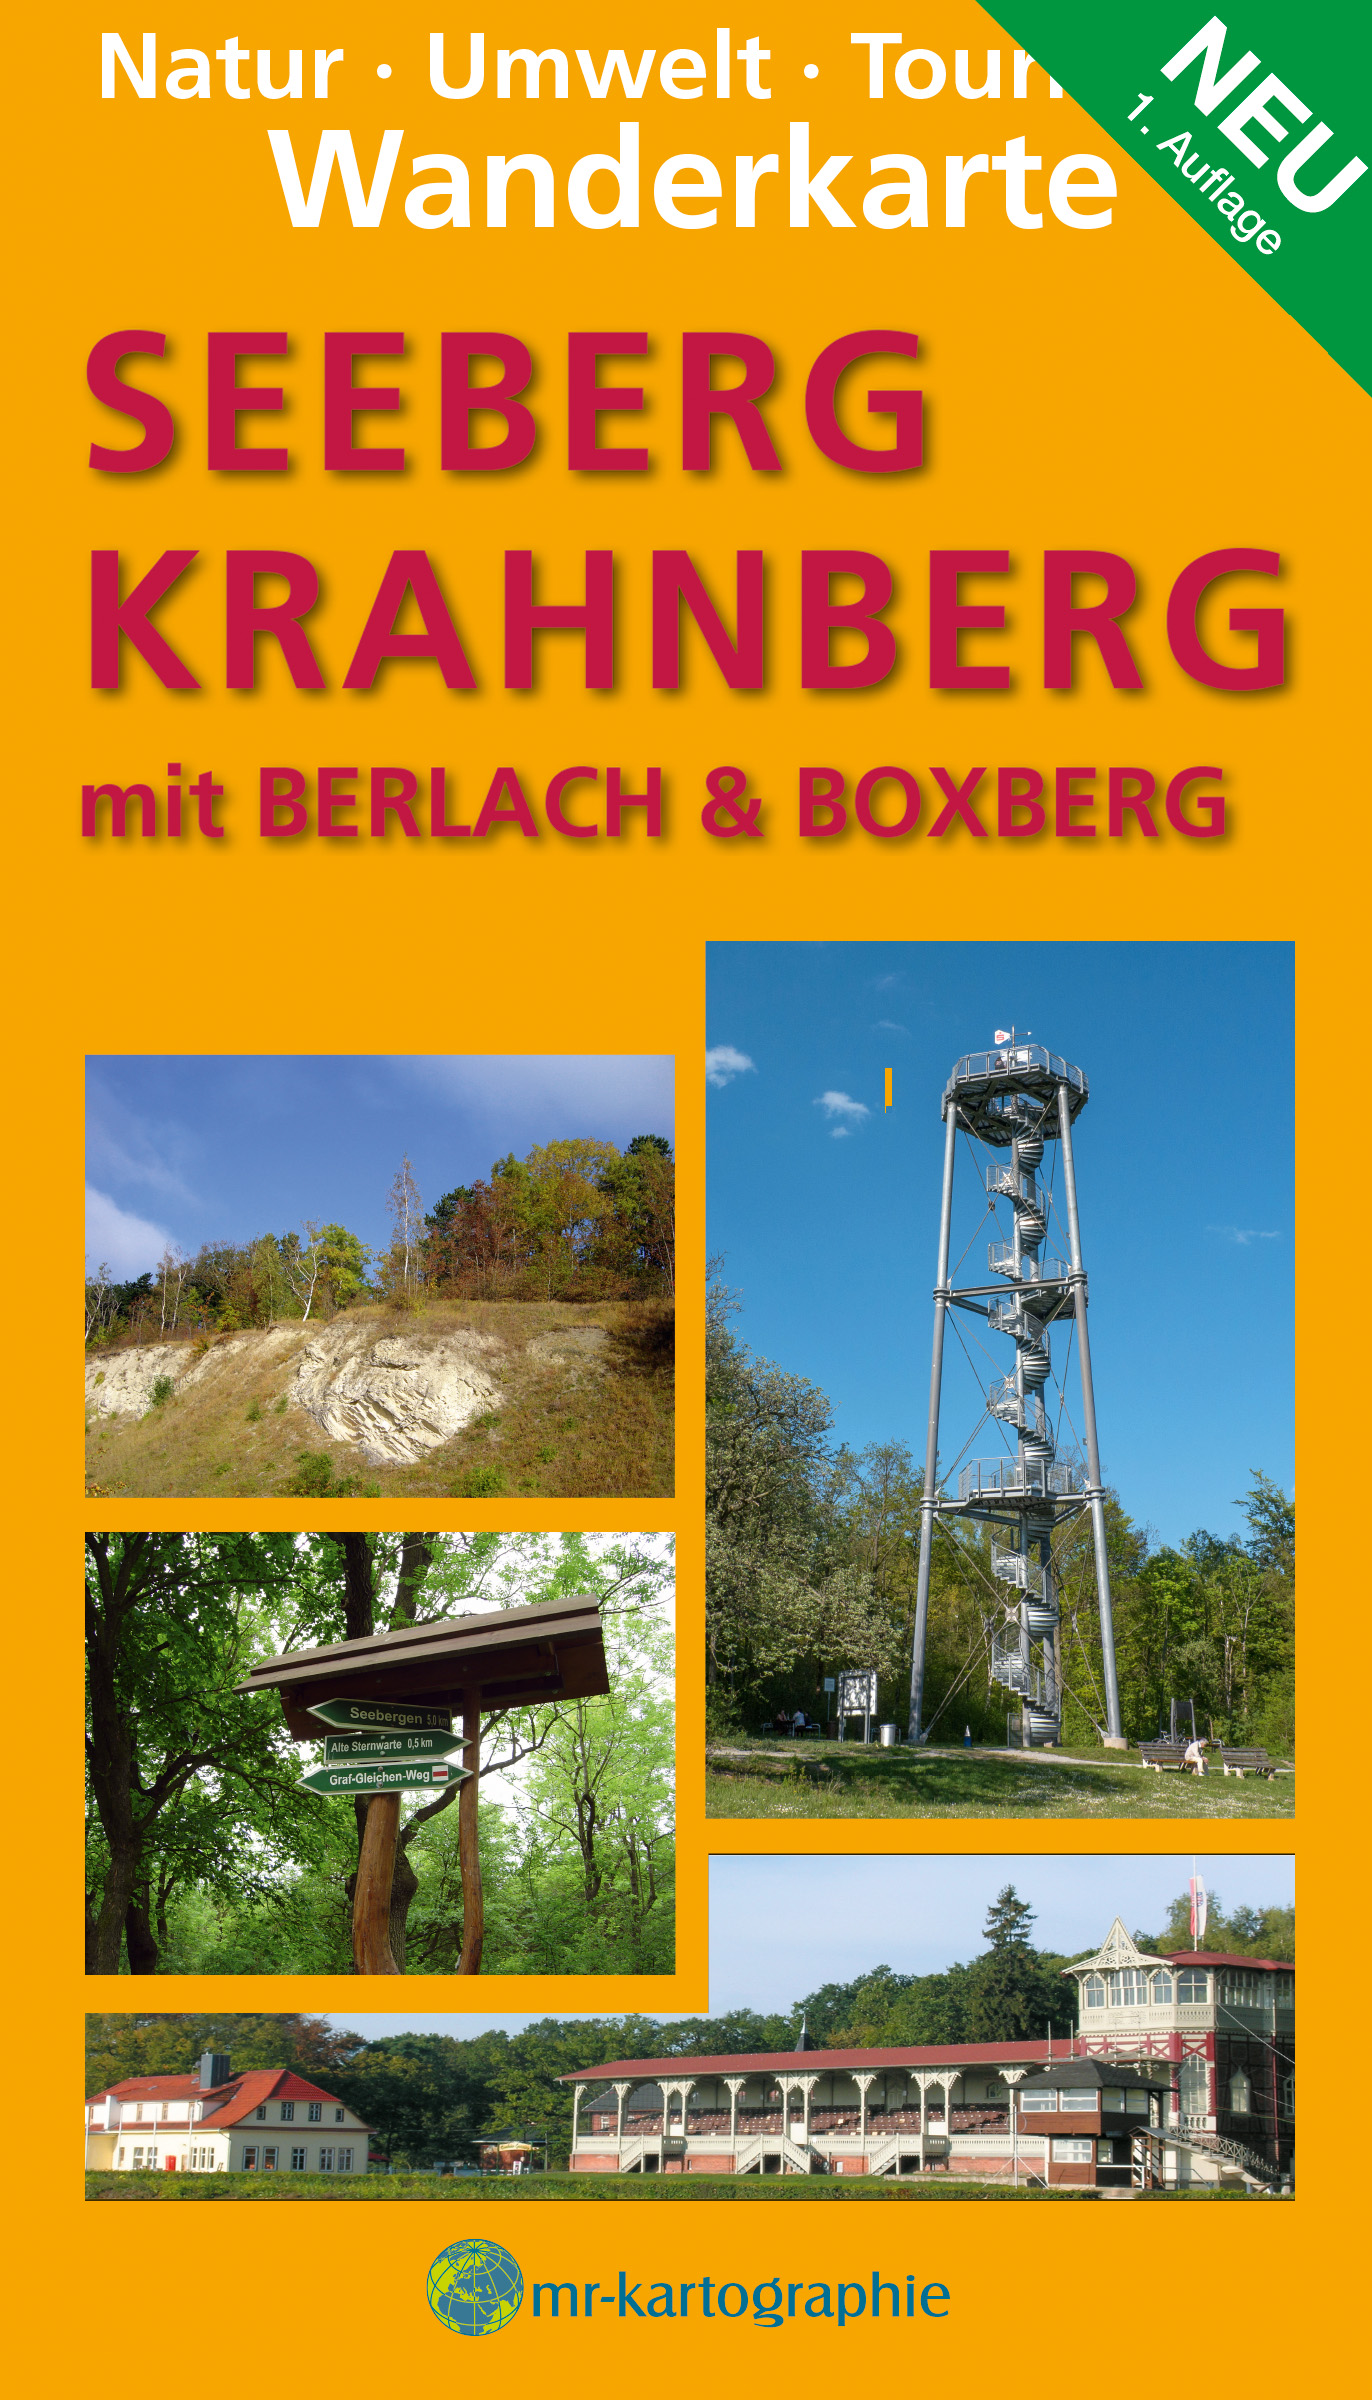 Logo:Wanderkarte Seeberg / Krahnberg